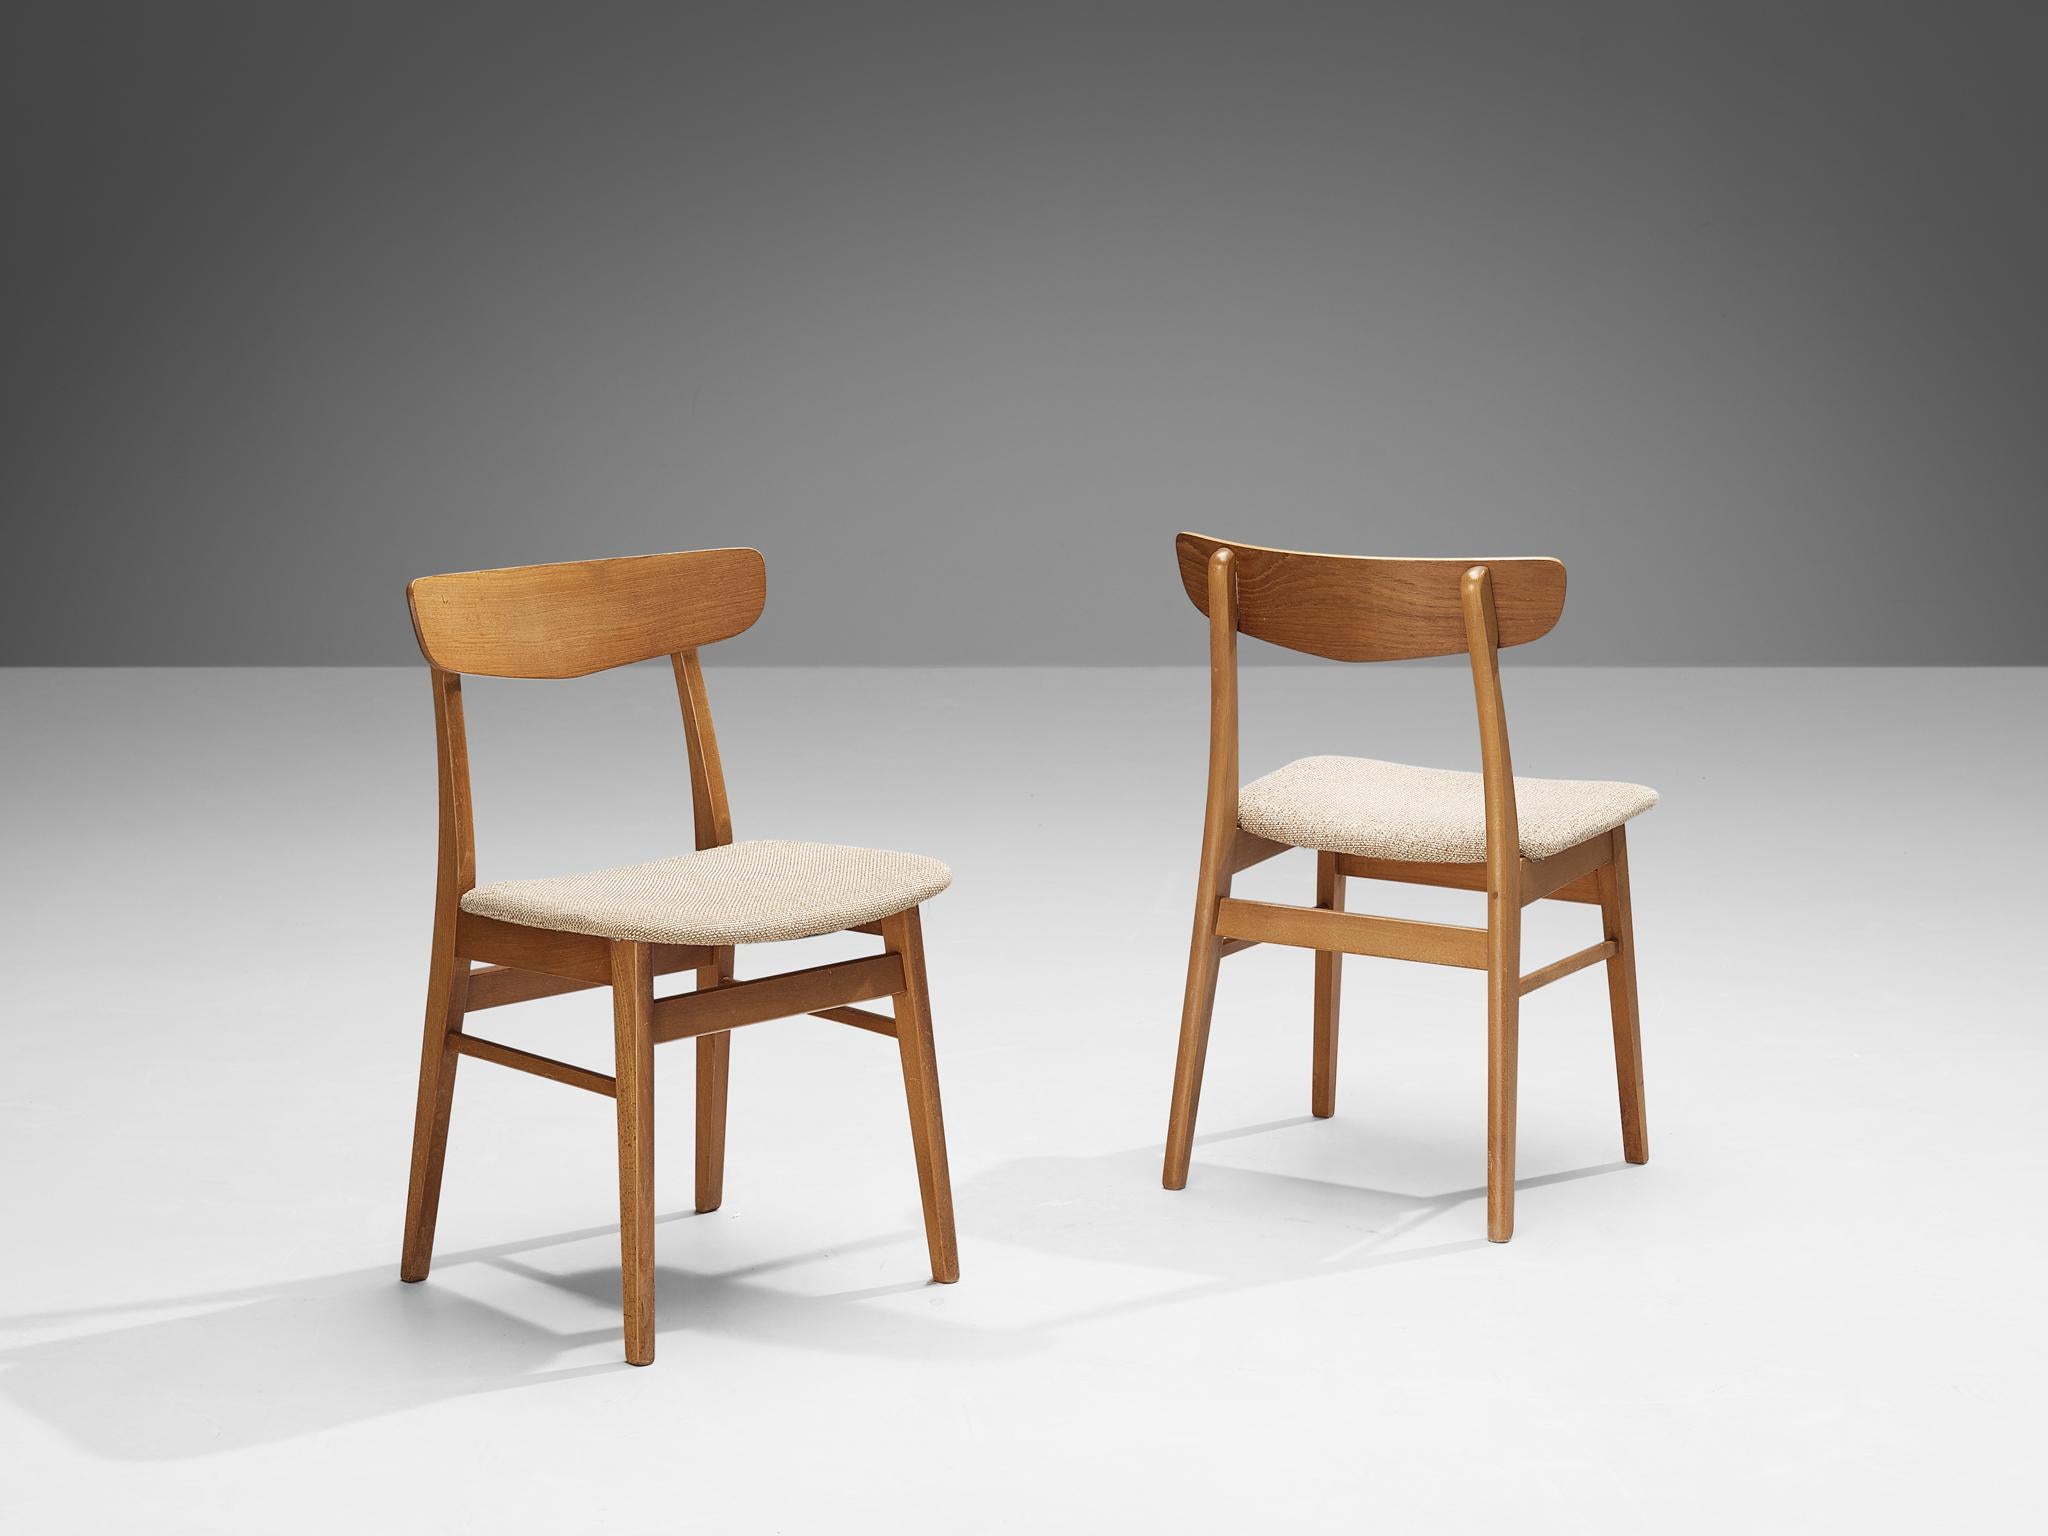 Chaises de salle à manger, teck, hêtre, tissu, Danemark, années 1960

Ces chaises de salle à manger danoises présentent une esthétique convaincante typique du style danois des années 1960, rappelant le travail de Hans J. Wegner. Le design est bien